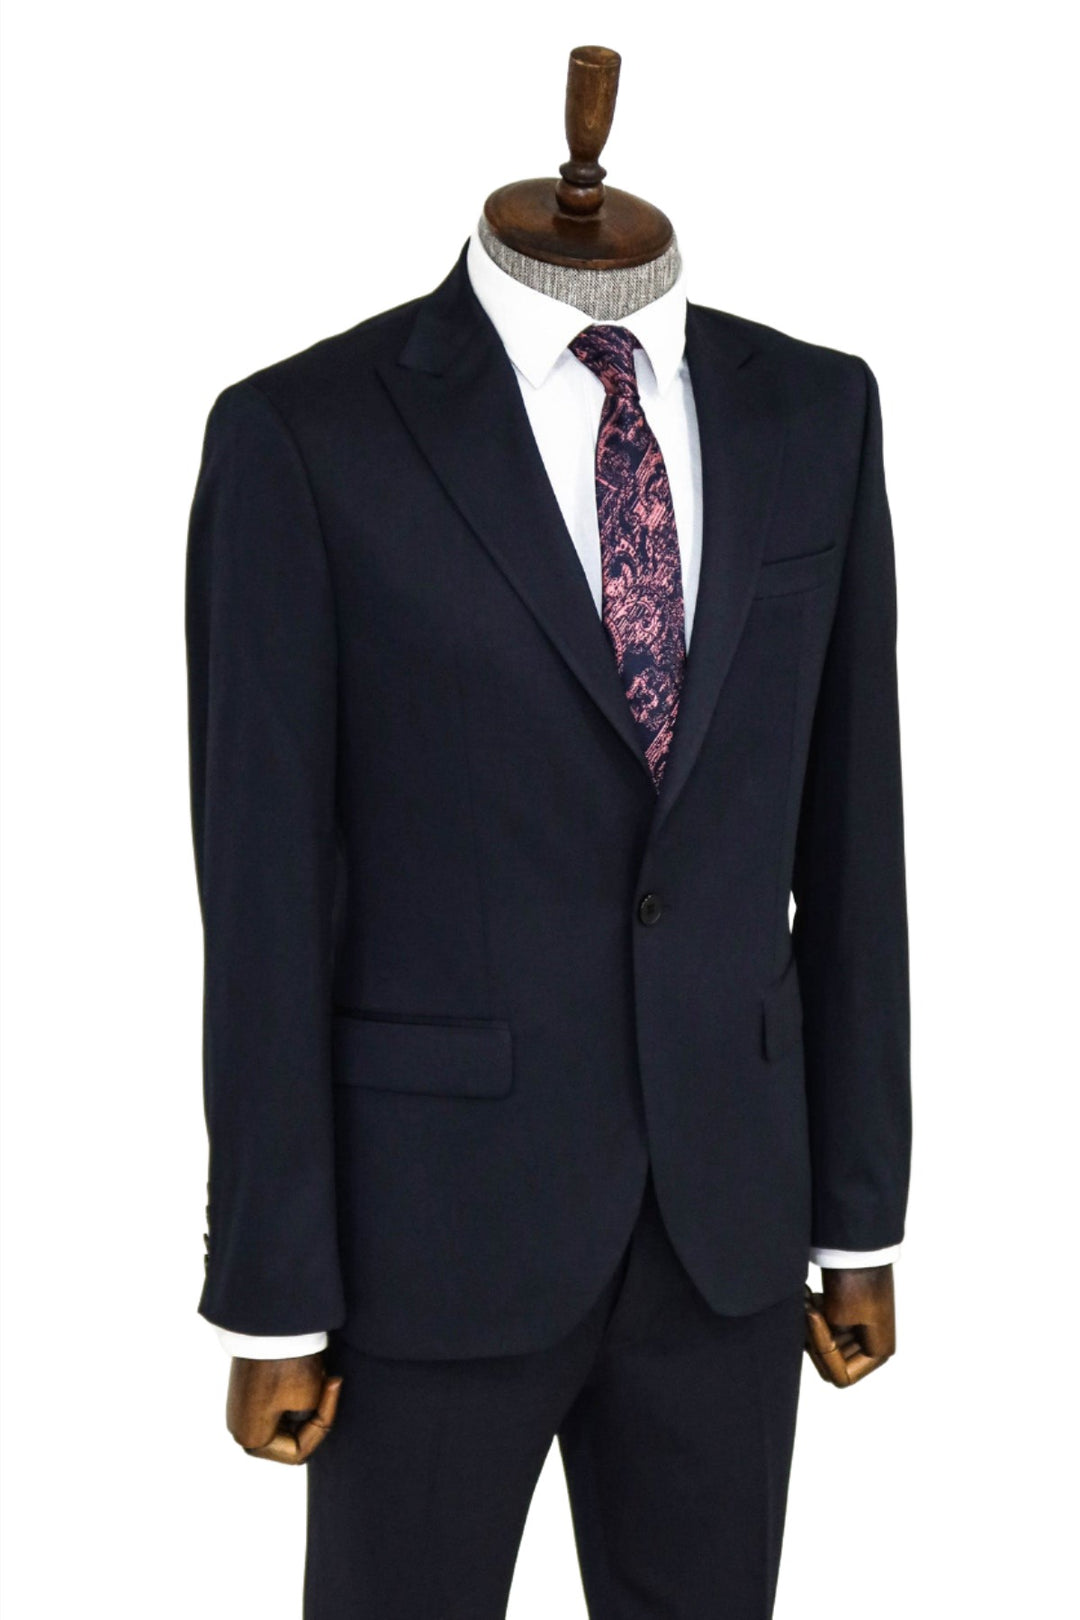 Plain 2 Piece Slim Fit Dark Blue Men Suit and Shirt Combination- Wessi